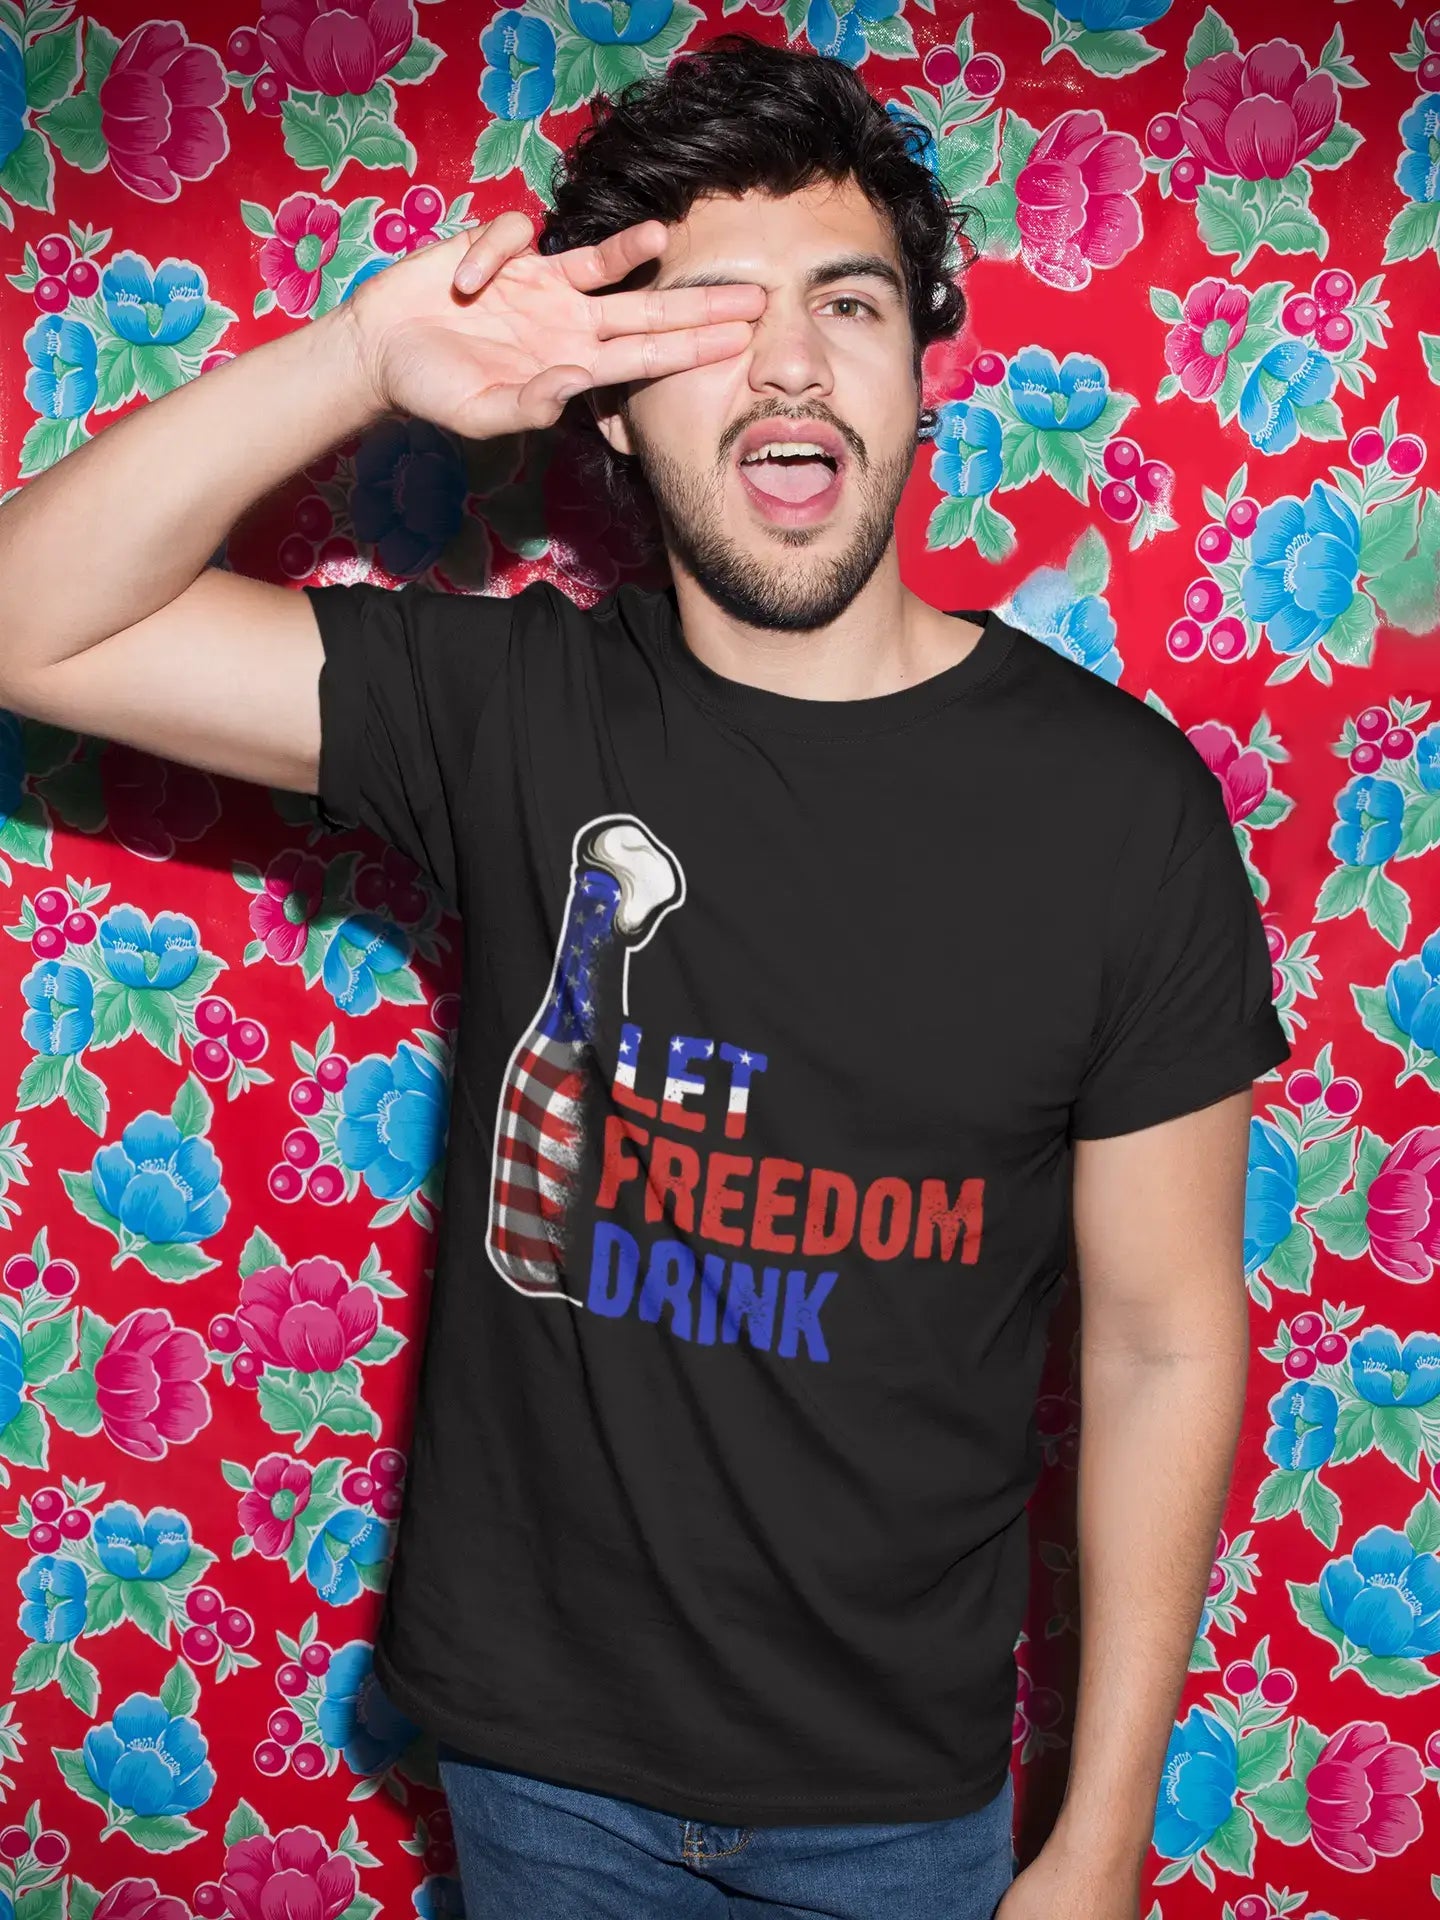 ULTRABASIC Men's T-Shirt Let Freedom Drink American Flag - Beer Lover Tee Shirt for Men